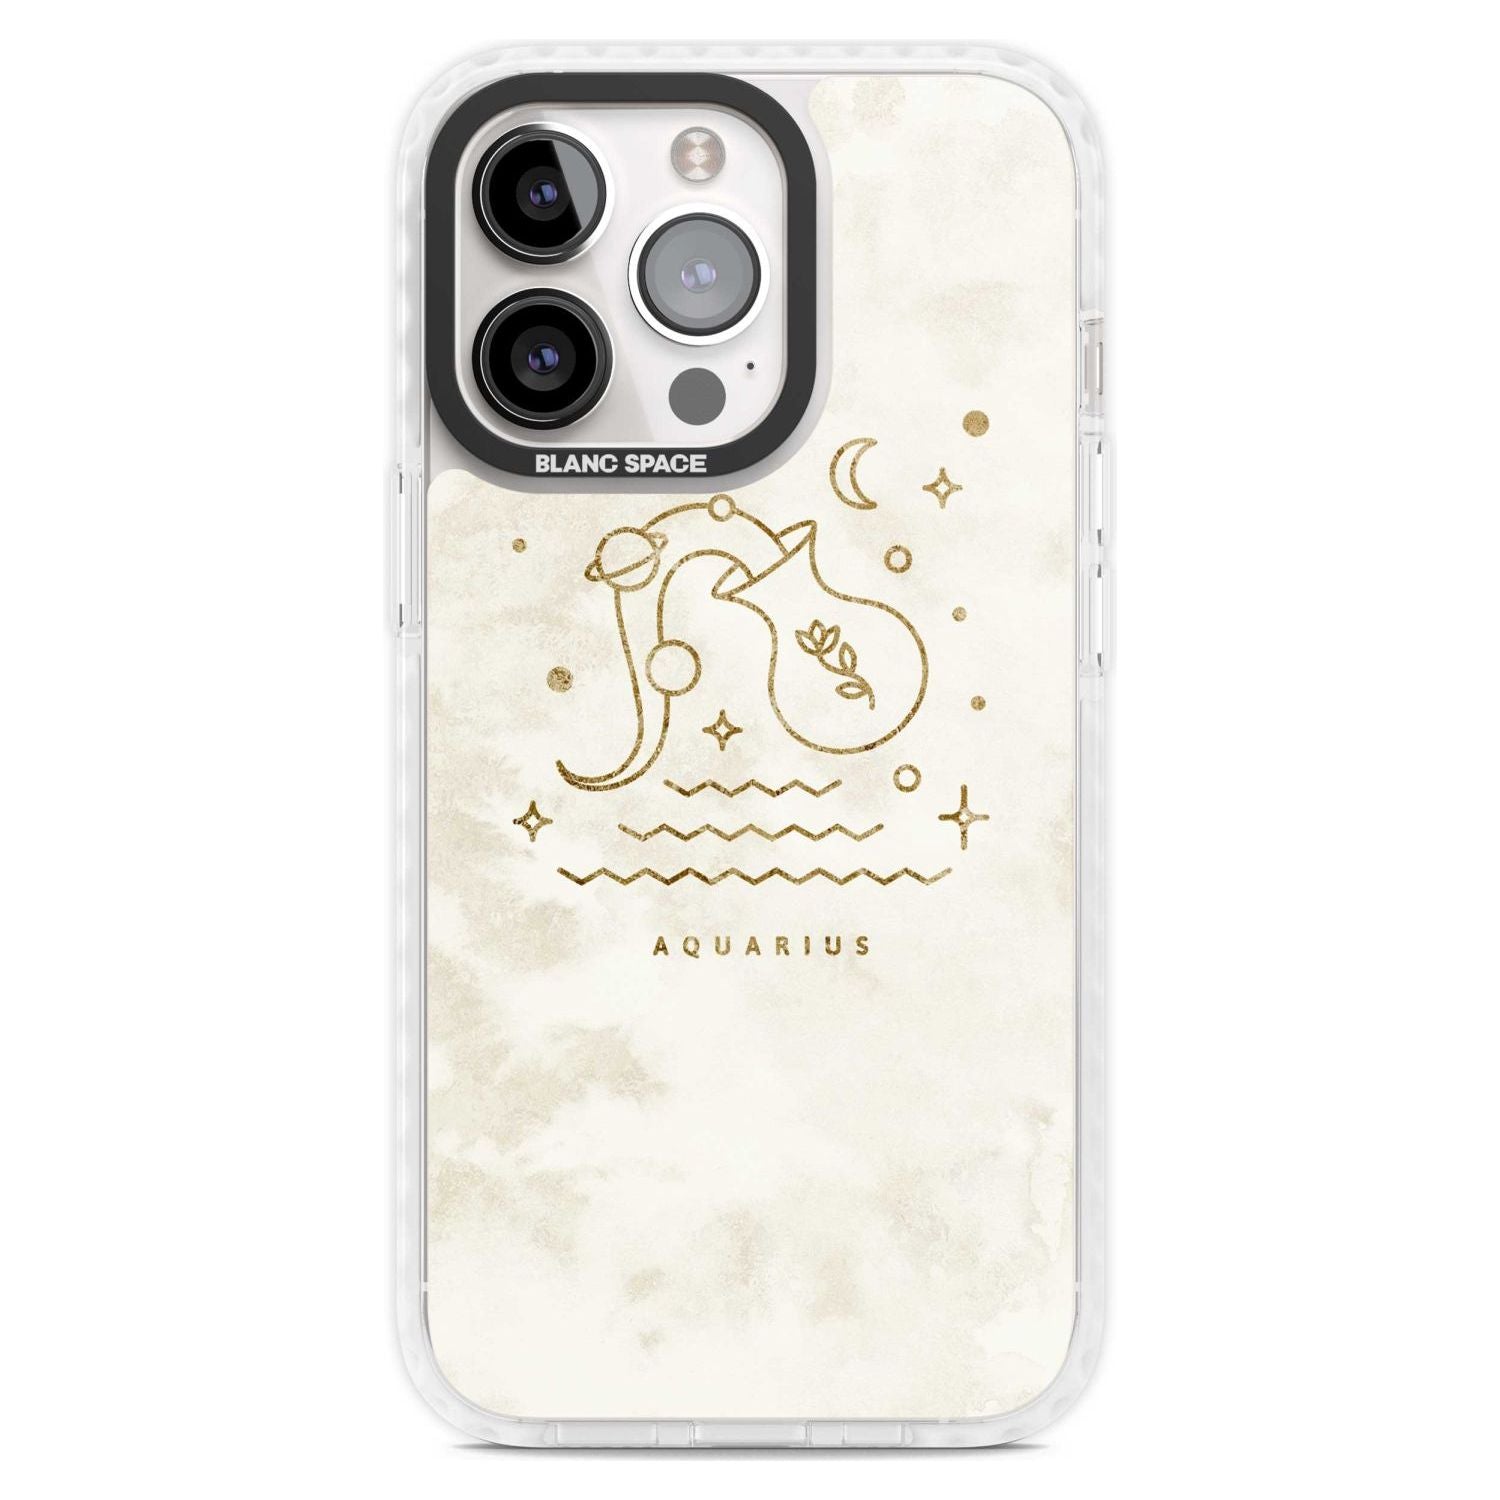 Aquarius Emblem - Solid Gold Marbled Design Phone Case iPhone 15 Pro Max / Magsafe Impact Case,iPhone 15 Pro / Magsafe Impact Case Blanc Space